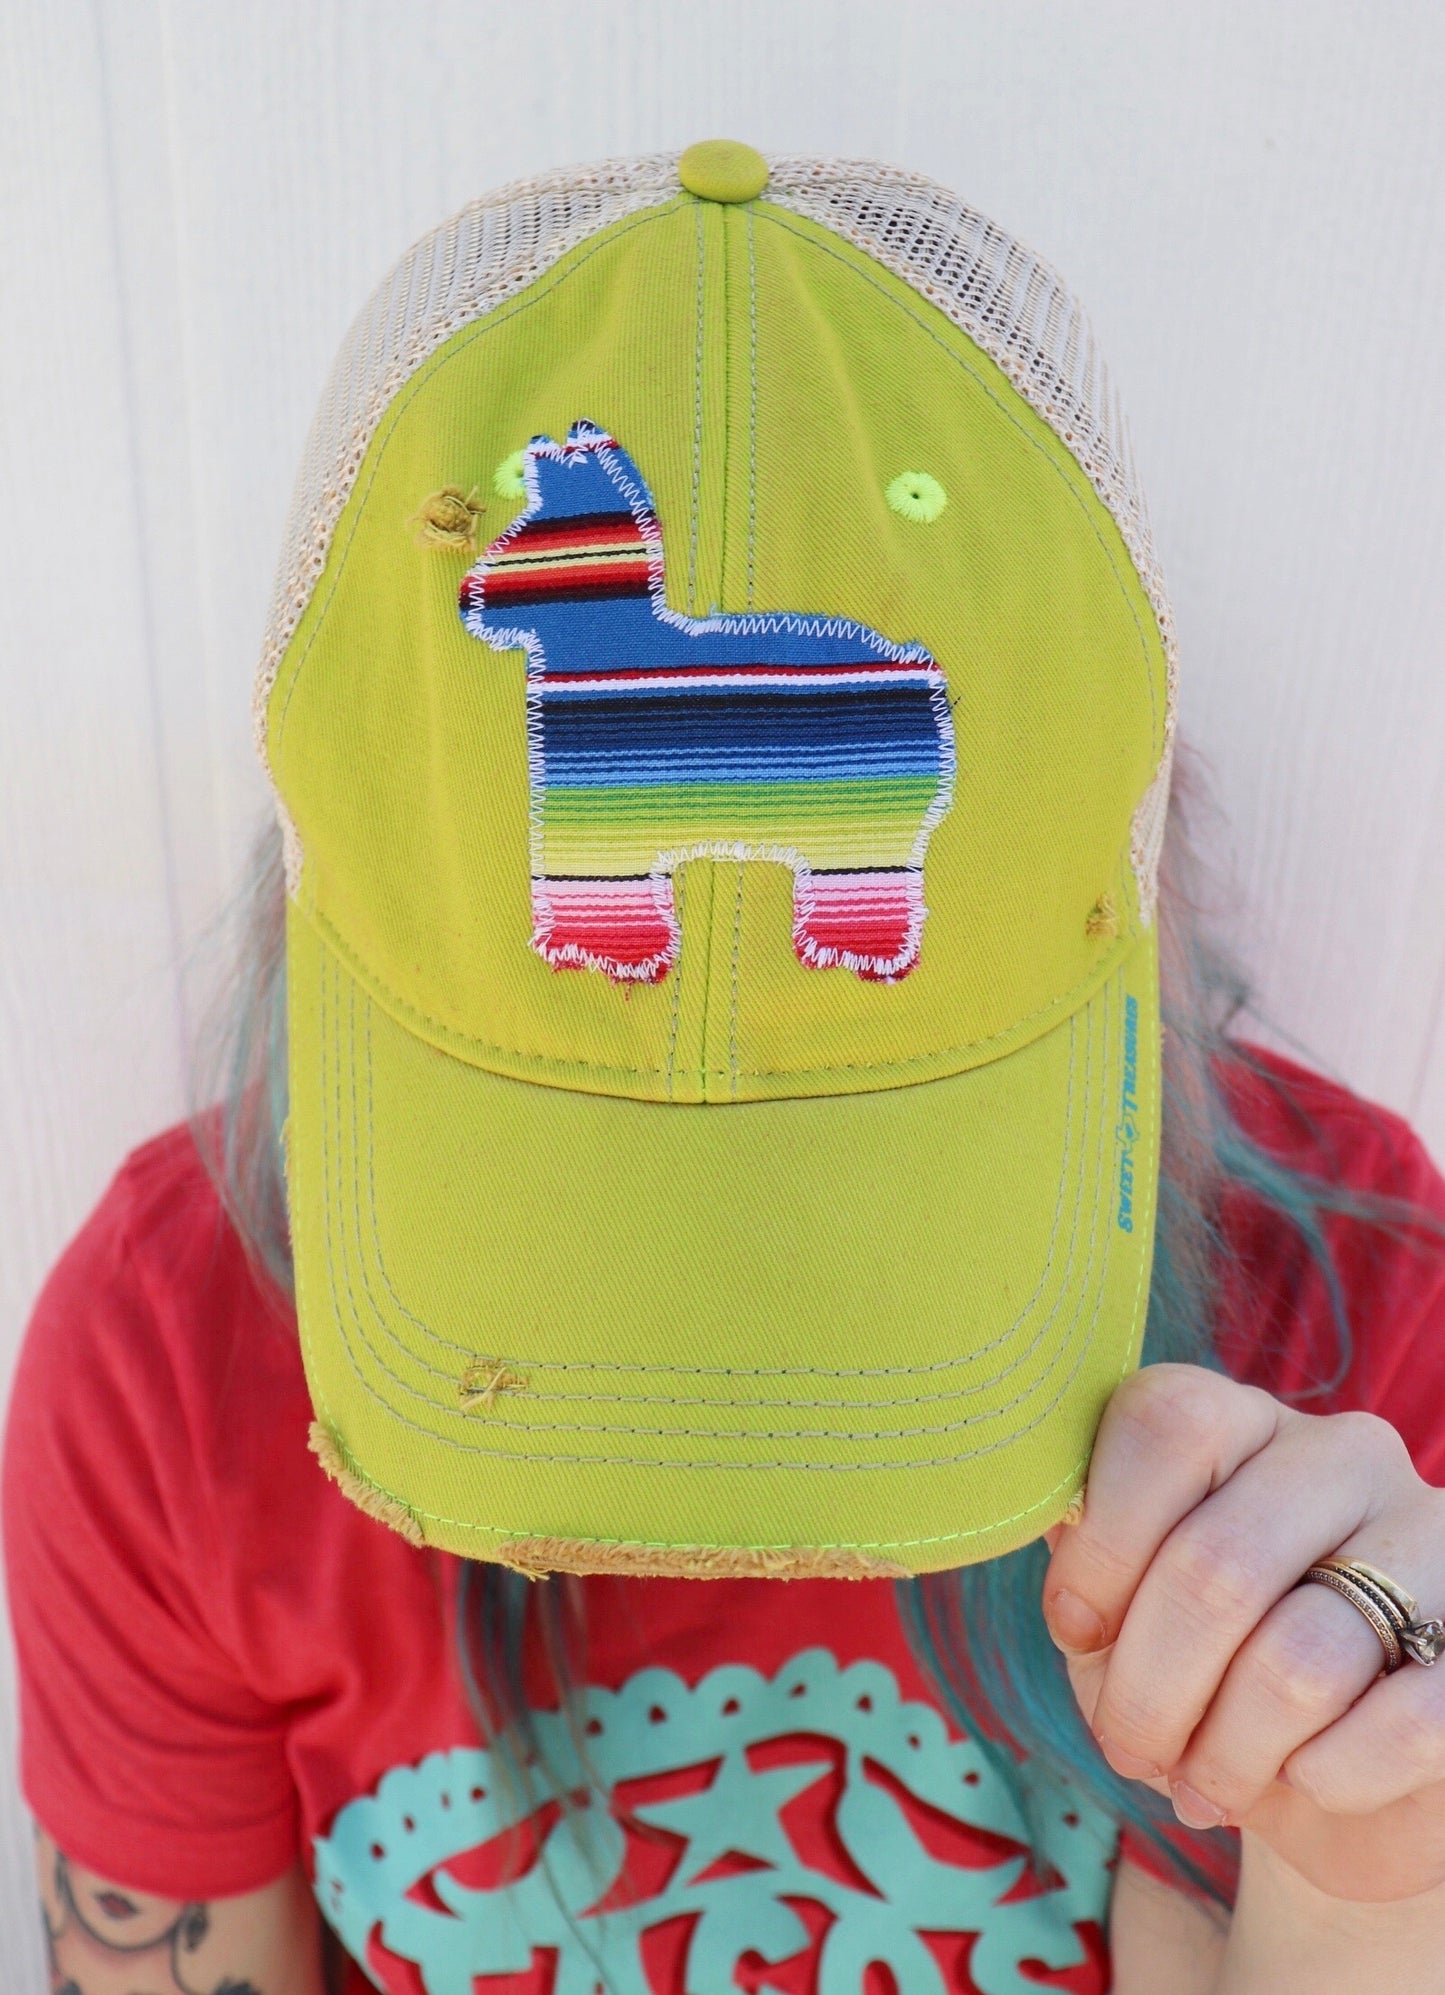 Fiesta Serape Dirty Trucker Hat